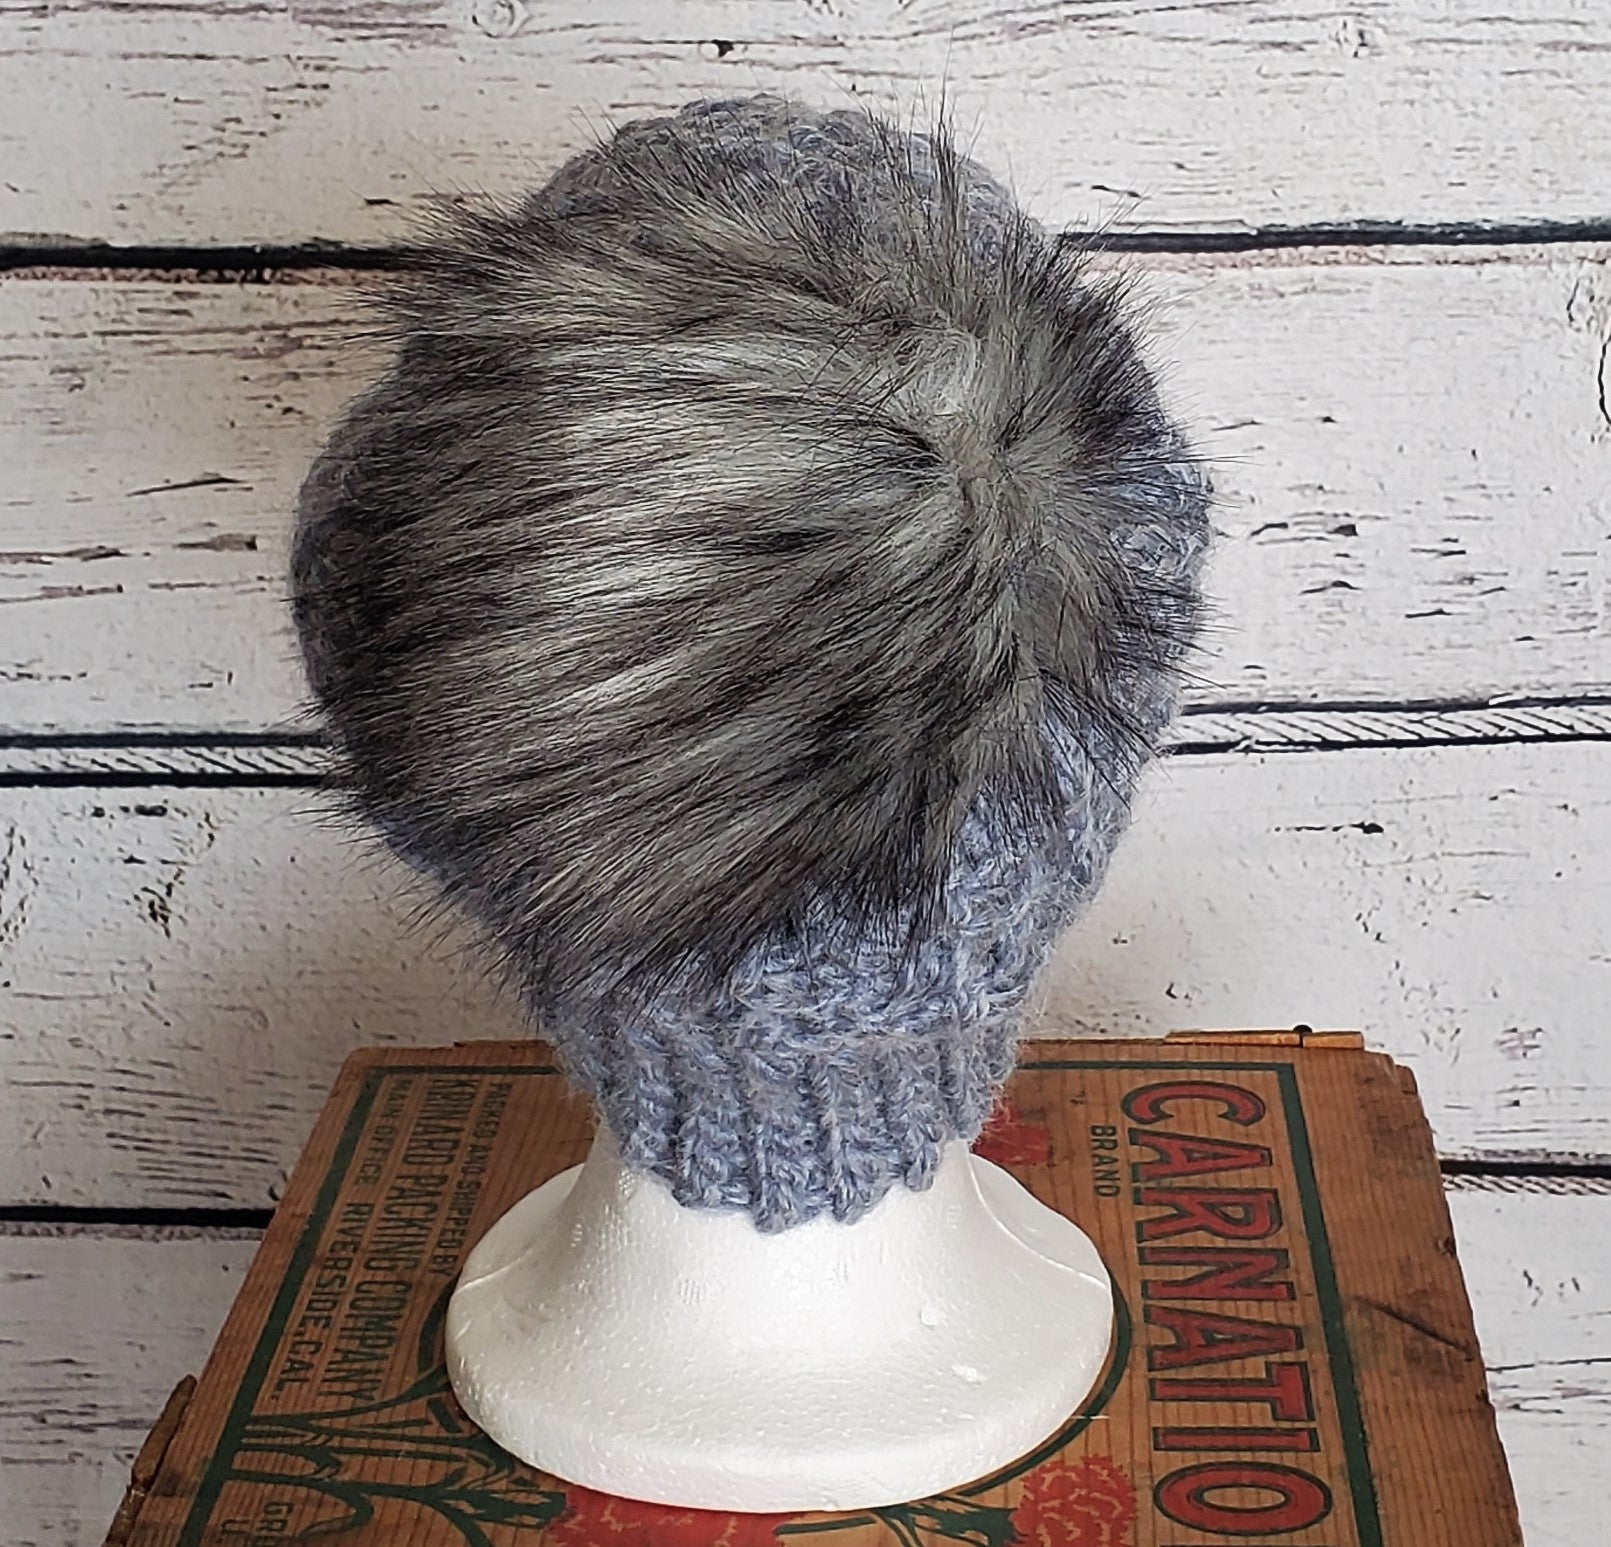 Pale Blue Alpaca Blend Wool Crochet Hat with Pom - a-Farm-girl-bytess | Handmade Alpaca Wool Winter Hats for Women